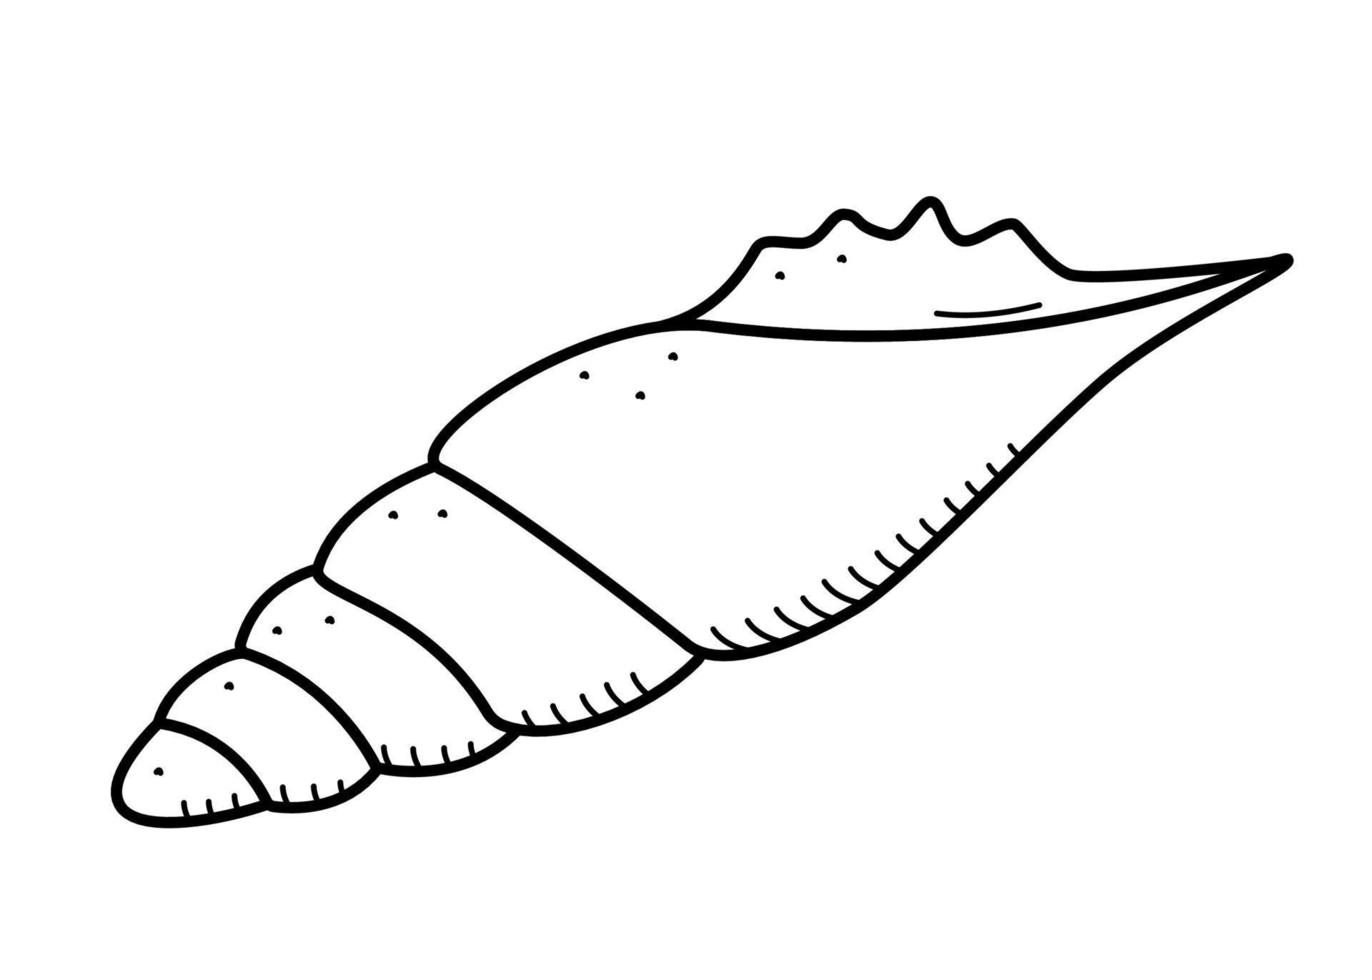 Muschel, einzelnes Isolat auf einem weißen Hintergrund. Vektor-Illustration einer Shell-Doodle-Skizze. vektor